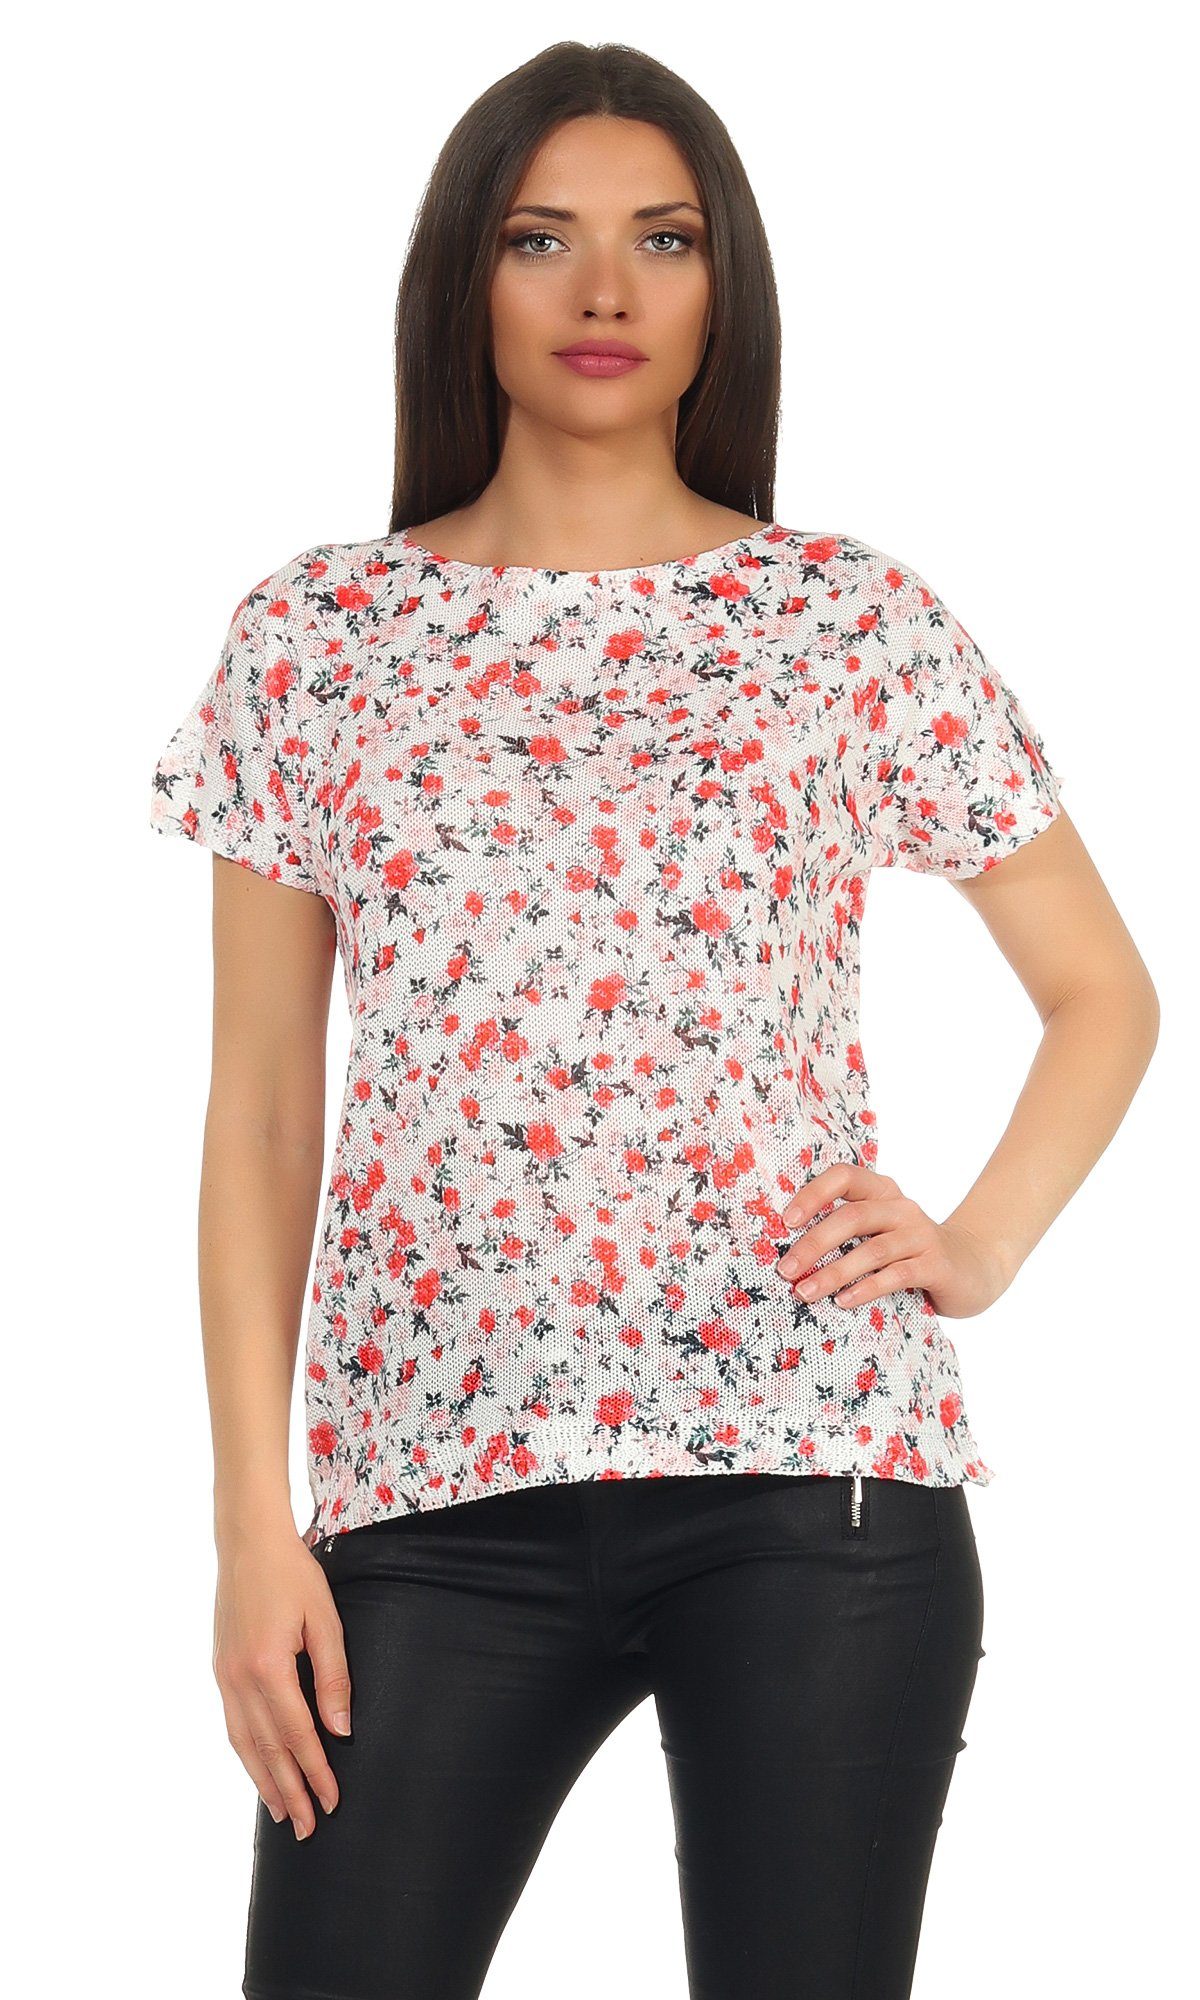 320 Tshirt mit Blumen Mississhop Shirt Bluse Print-Shirt Damen weißes